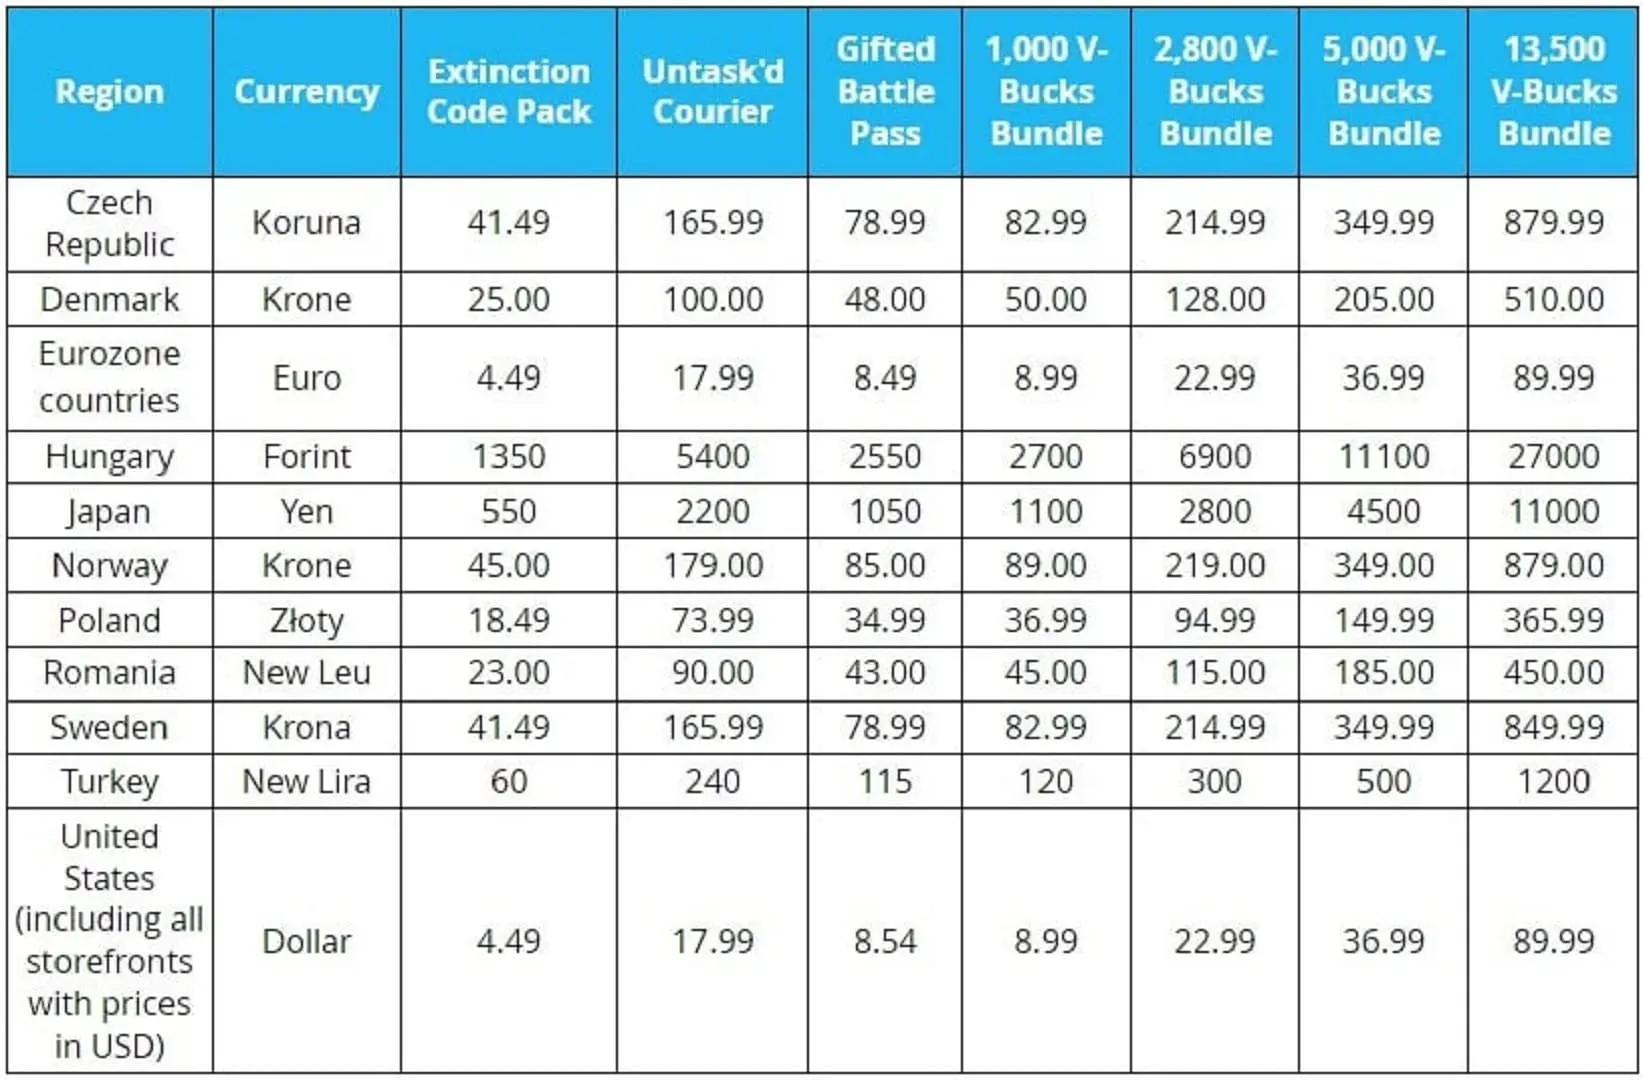 نرخ افزایش قیمت V-Bucks فورتنایت در مناطق مختلف